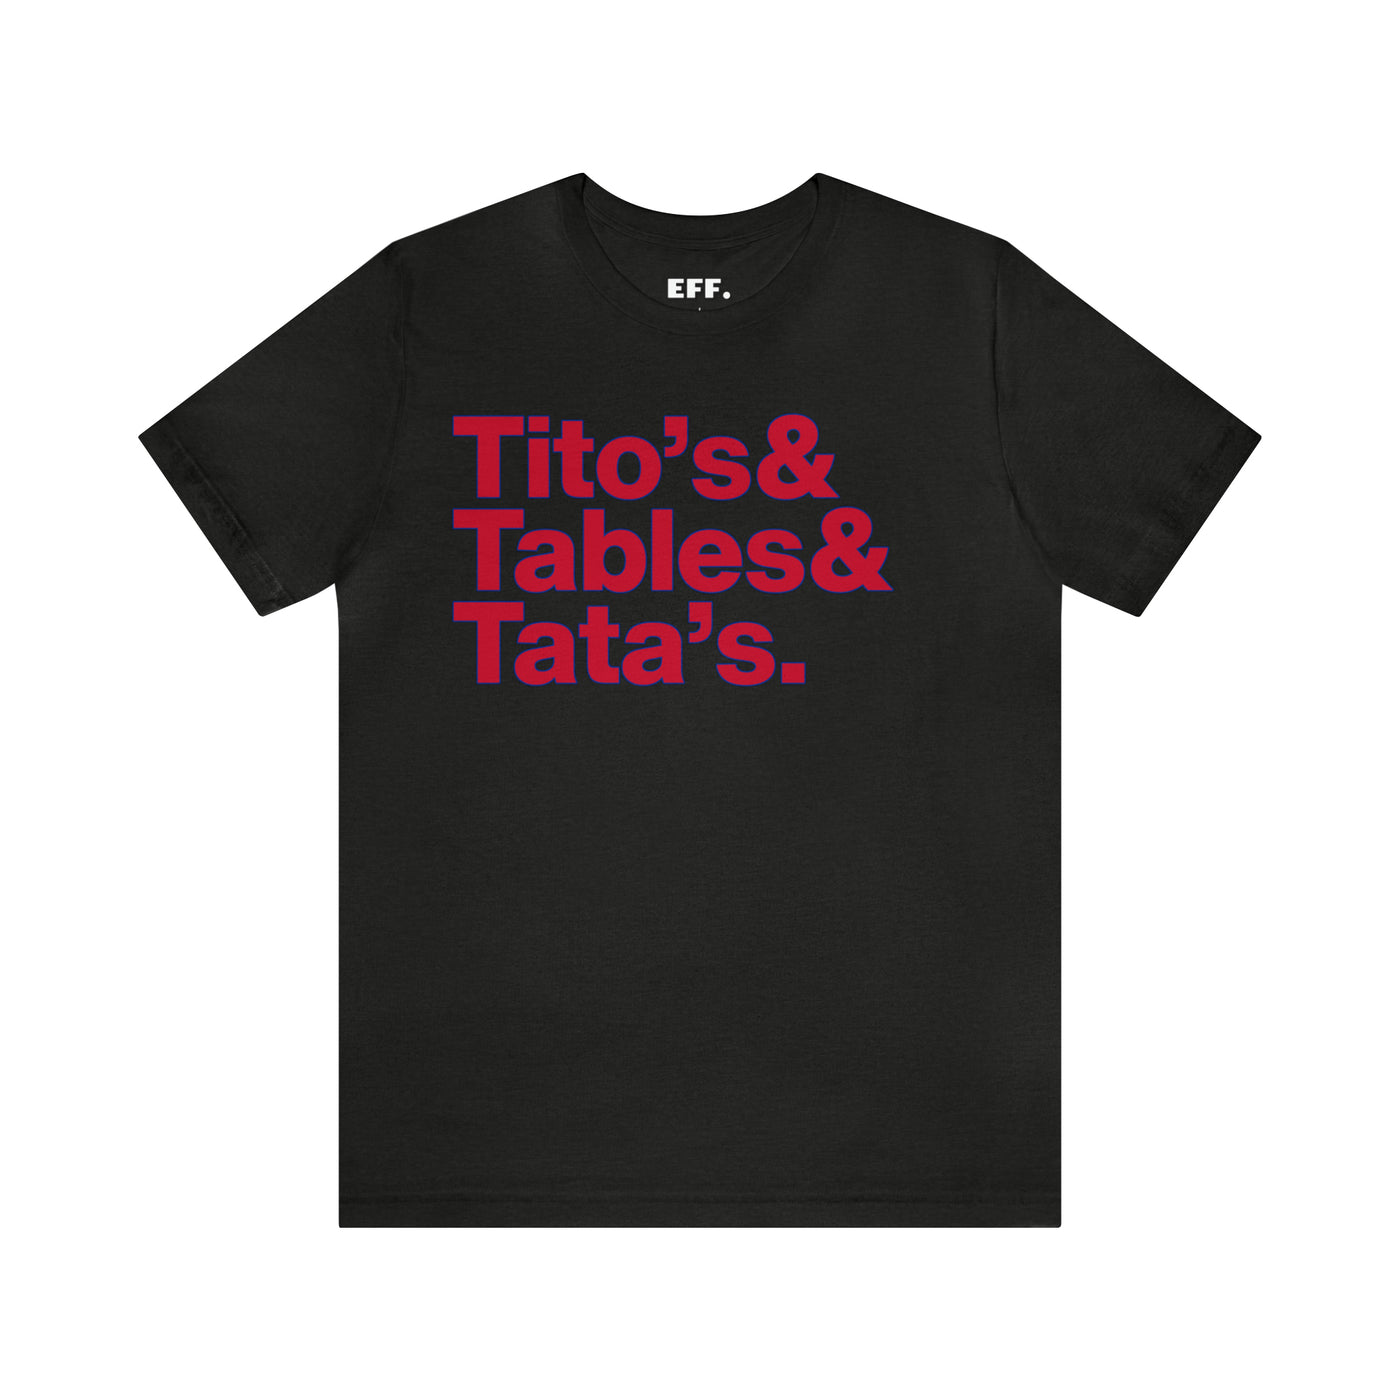 Tito's & Tables & Tata's.